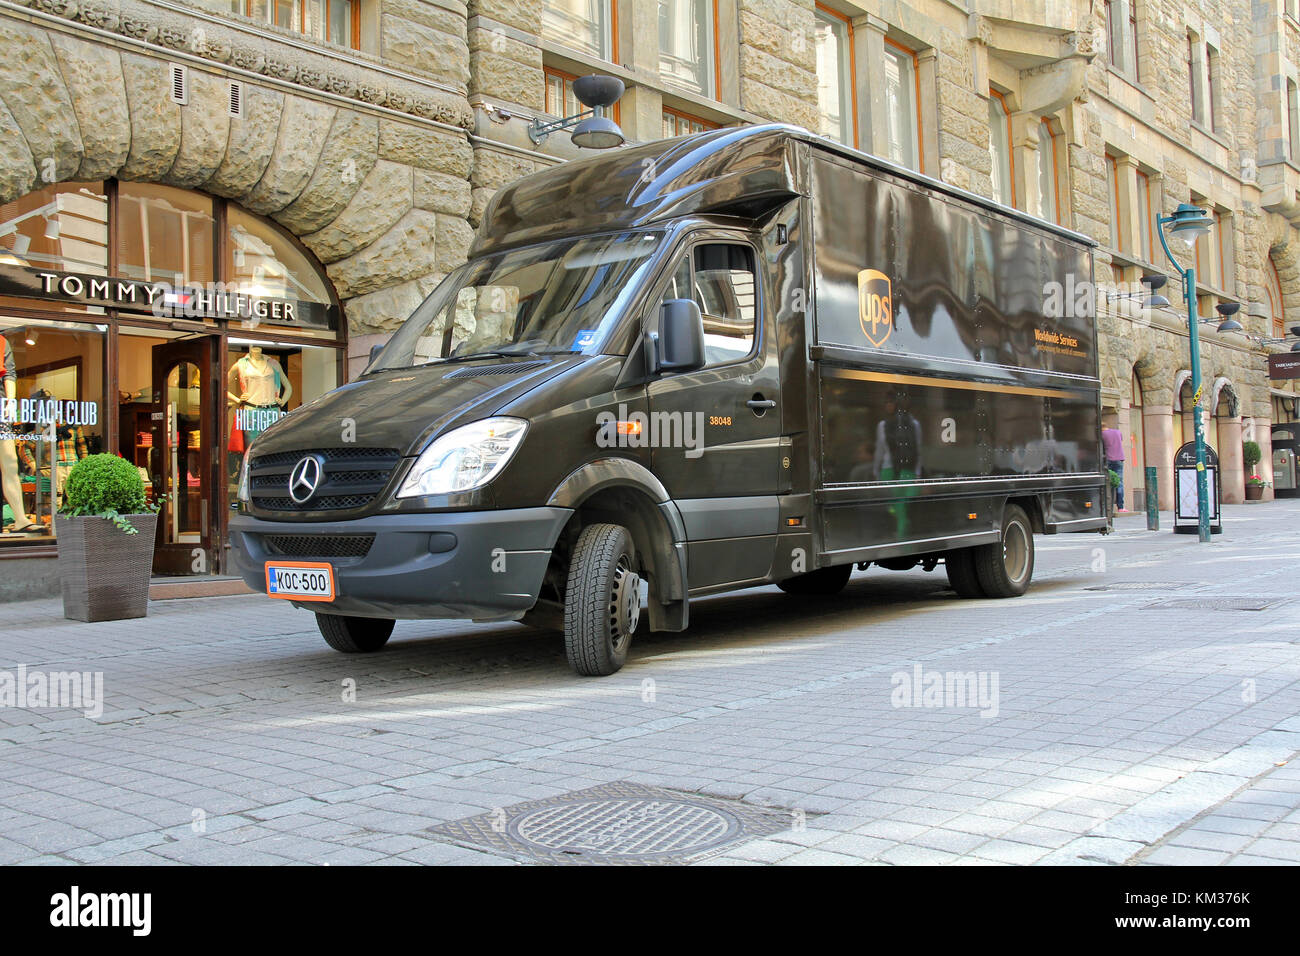 Helsinki, Finlandia - 20 maggio 2014: consegna ups carrello nel centro di helsinki. Il colore marrone che ups utilizza sui propri veicoli e uniformi è chiamato pullman Foto Stock